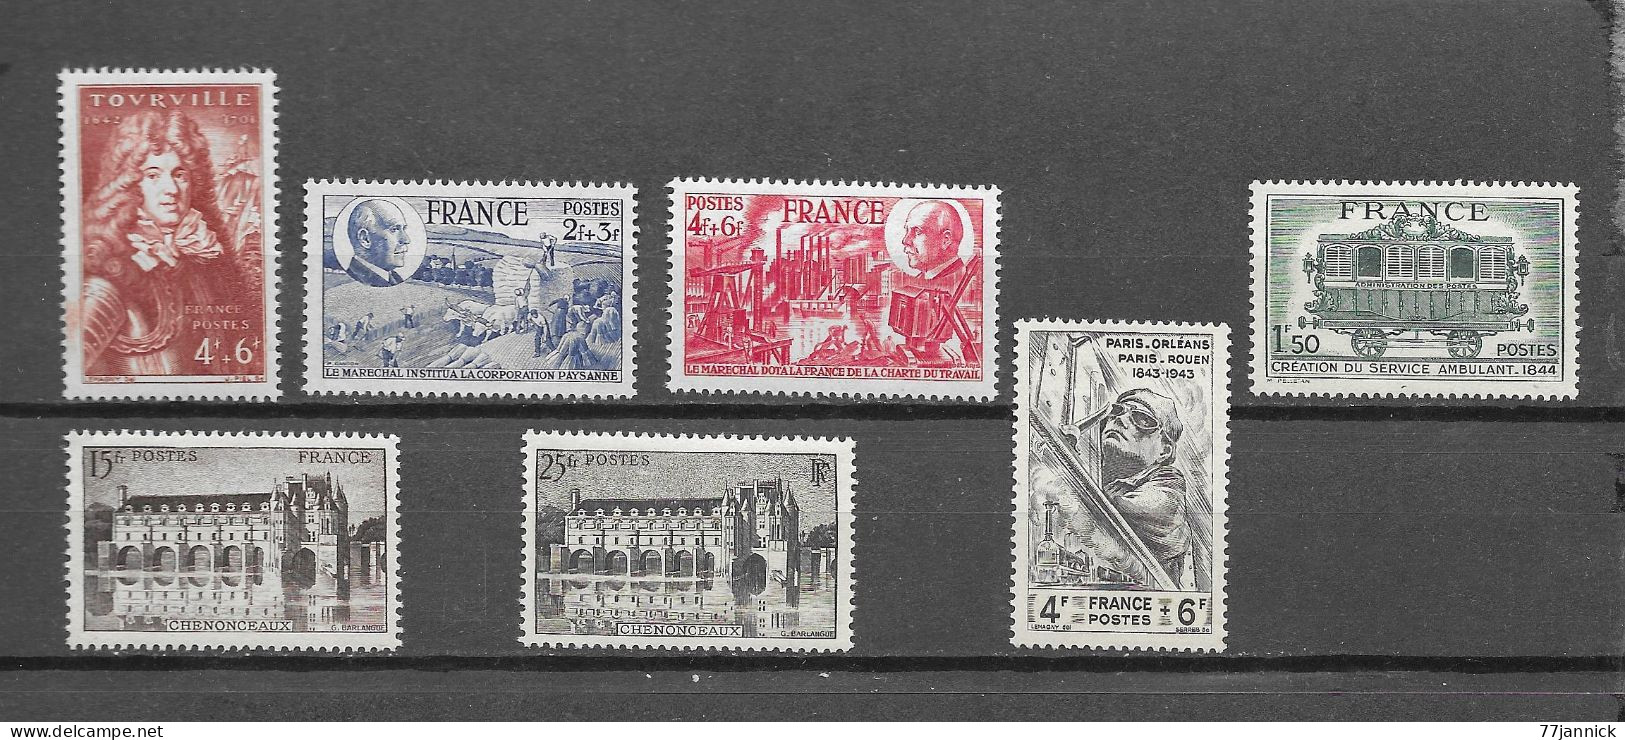 N° 600/607/608/609/610/611/618  NEUF** - Unused Stamps